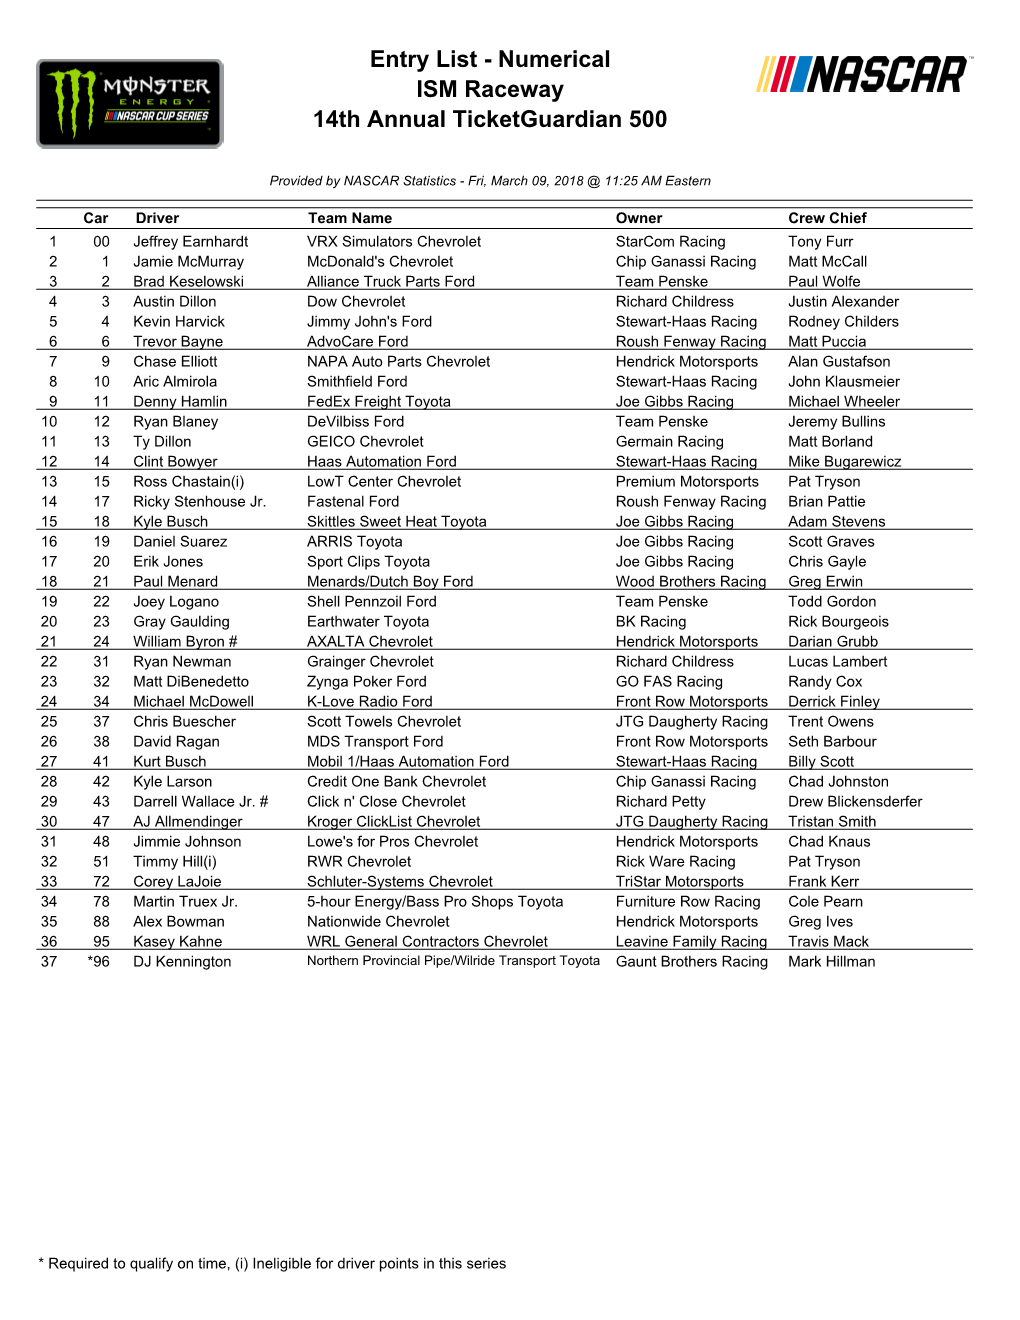 Entry List - Numerical ISM Raceway 14Th Annual Ticketguardian 500